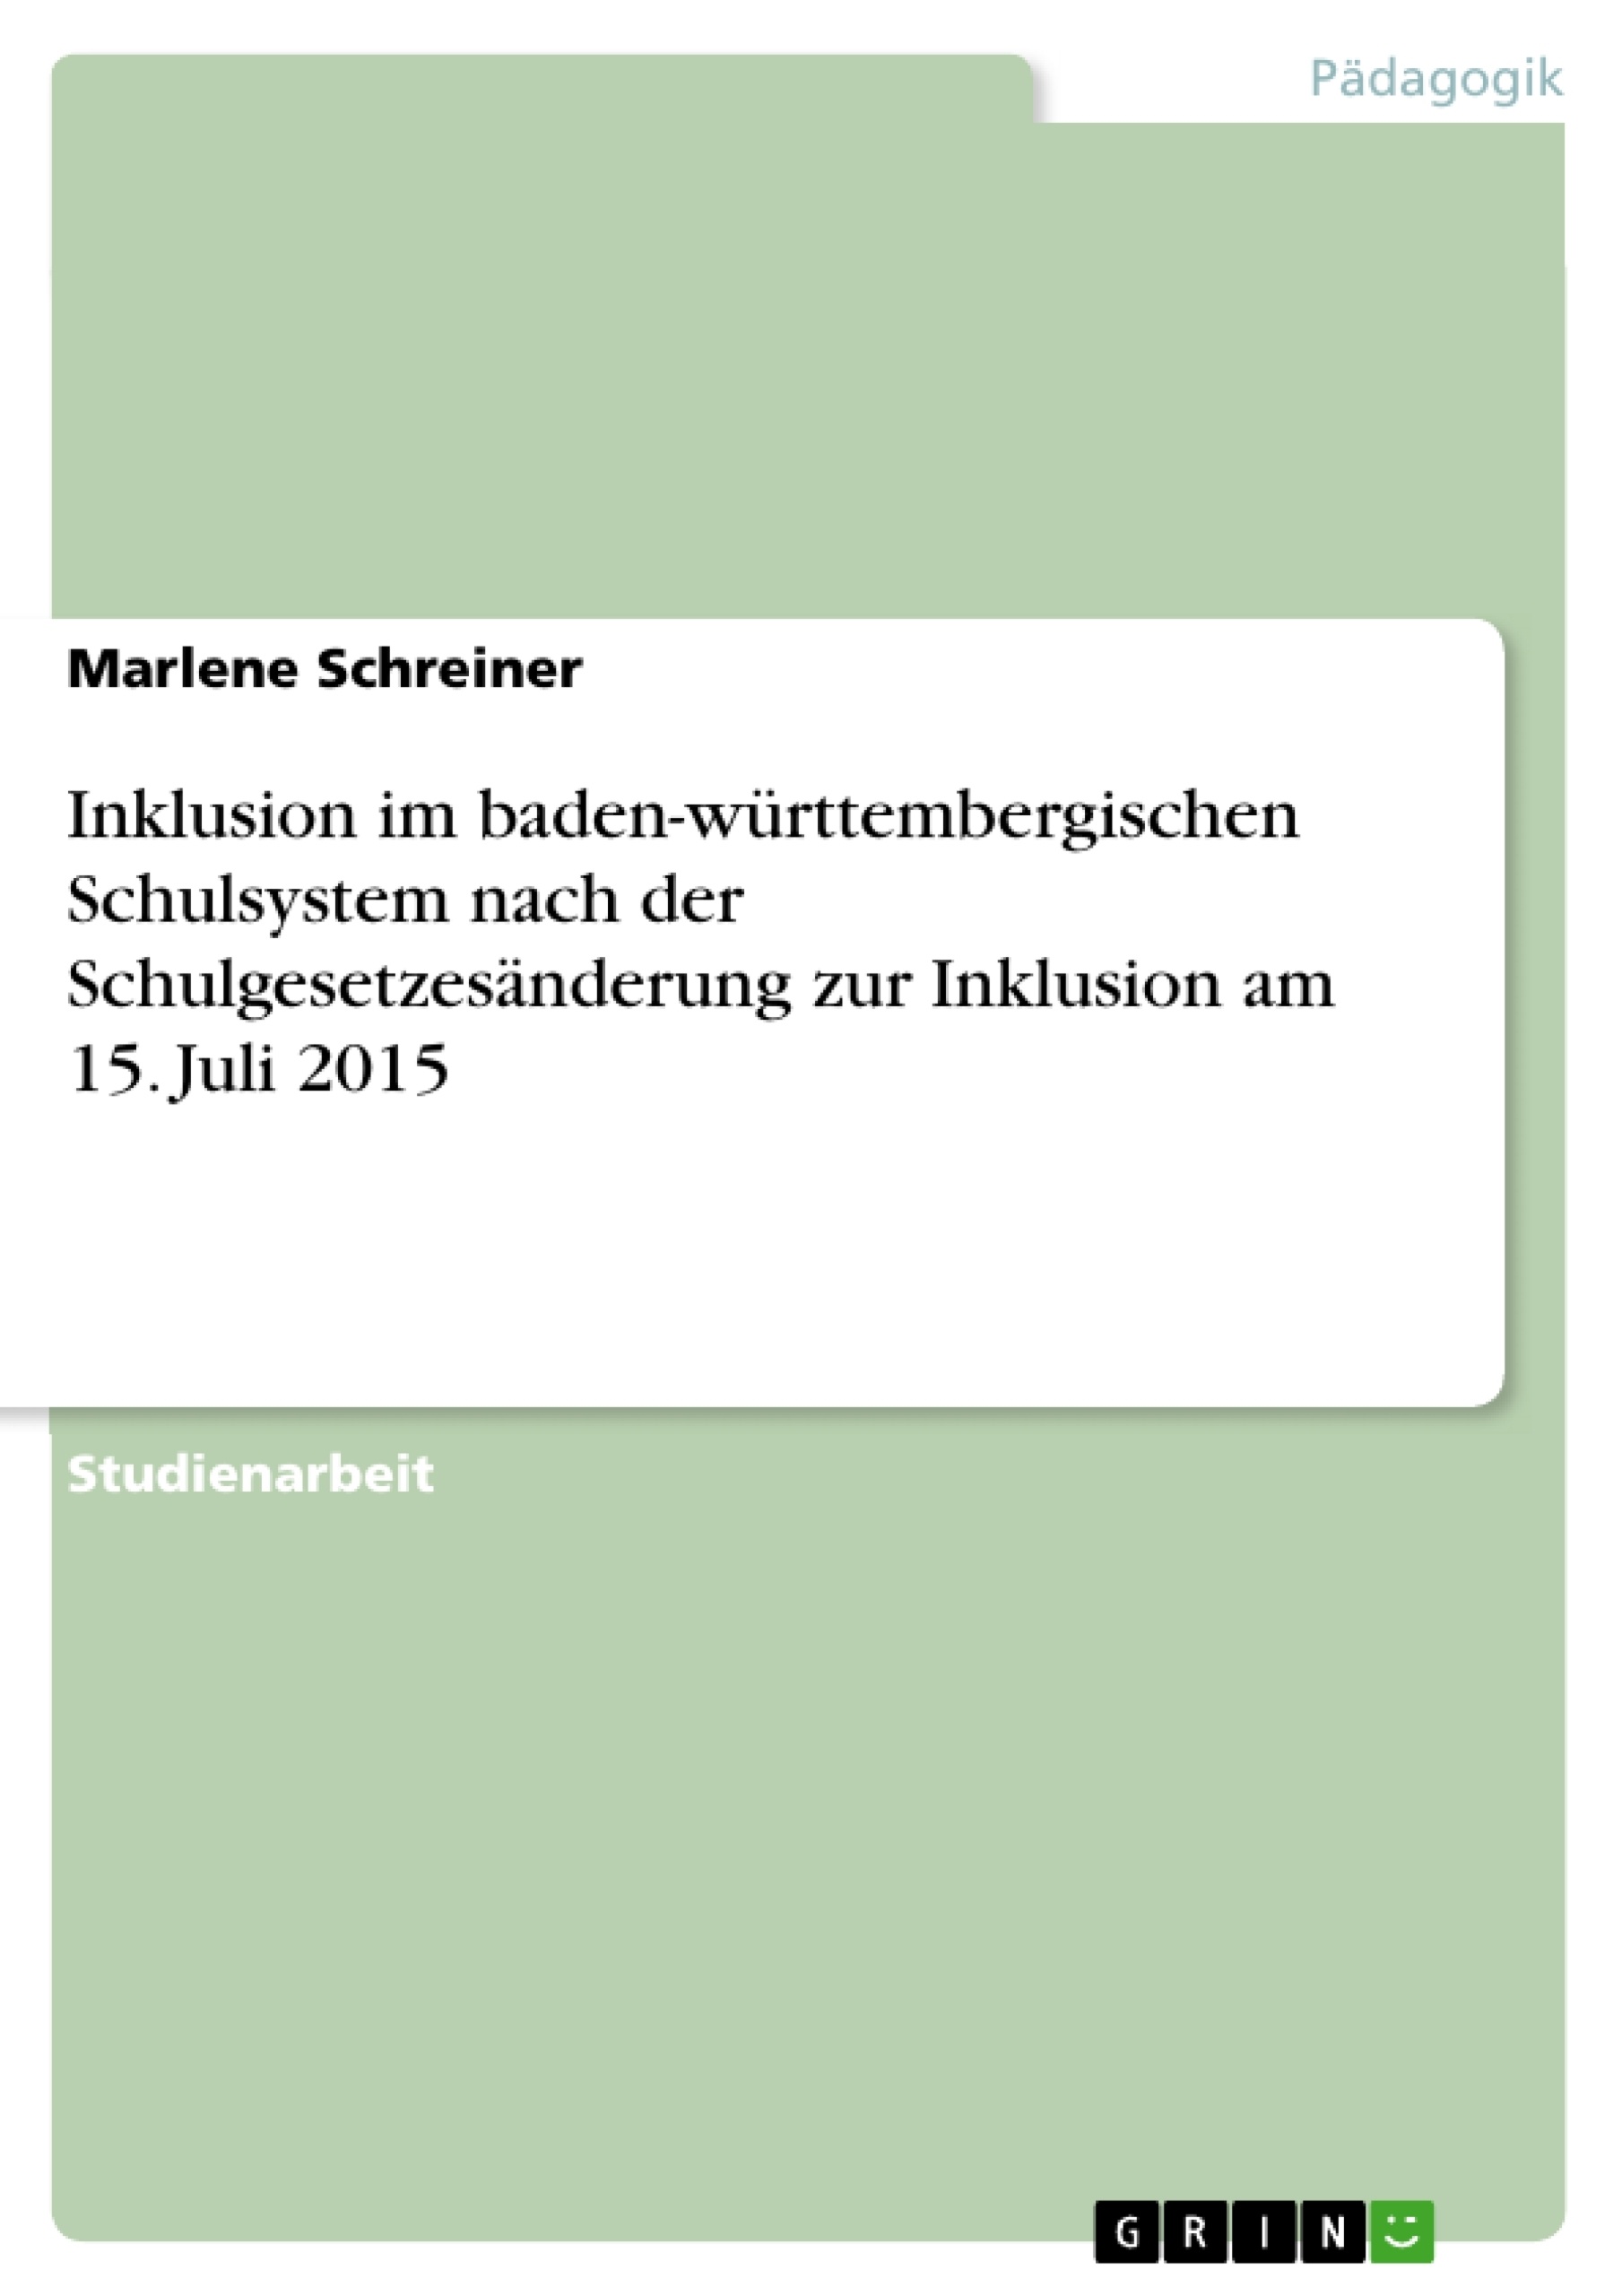 Título: Inklusion im baden-württembergischen Schulsystem nach der Schulgesetzesänderung zur Inklusion am 15. Juli 2015